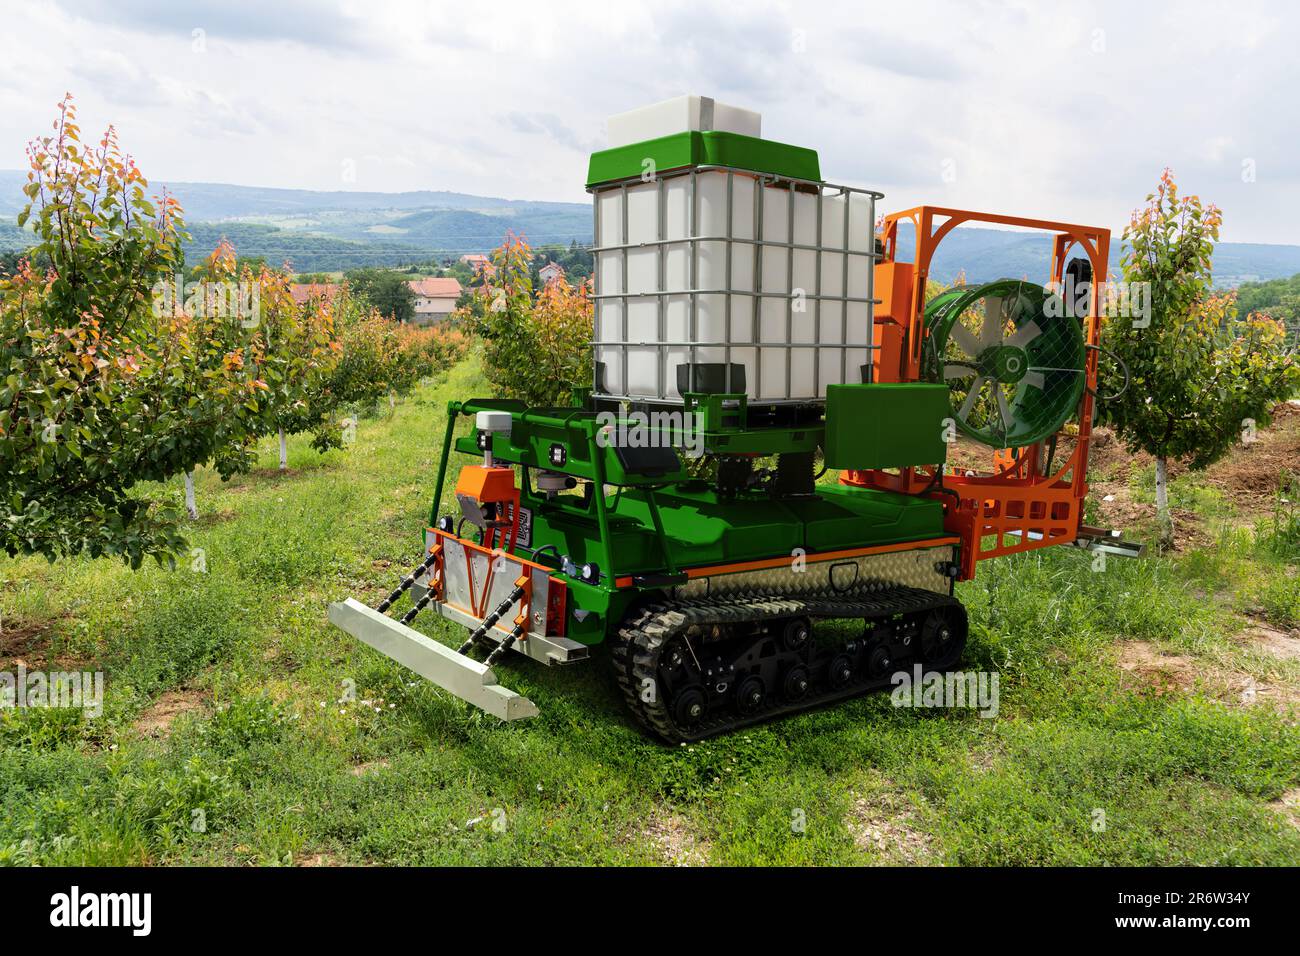 Autonomous robot sprayer works in a fruit garden. Smart farming concept Stock Photo